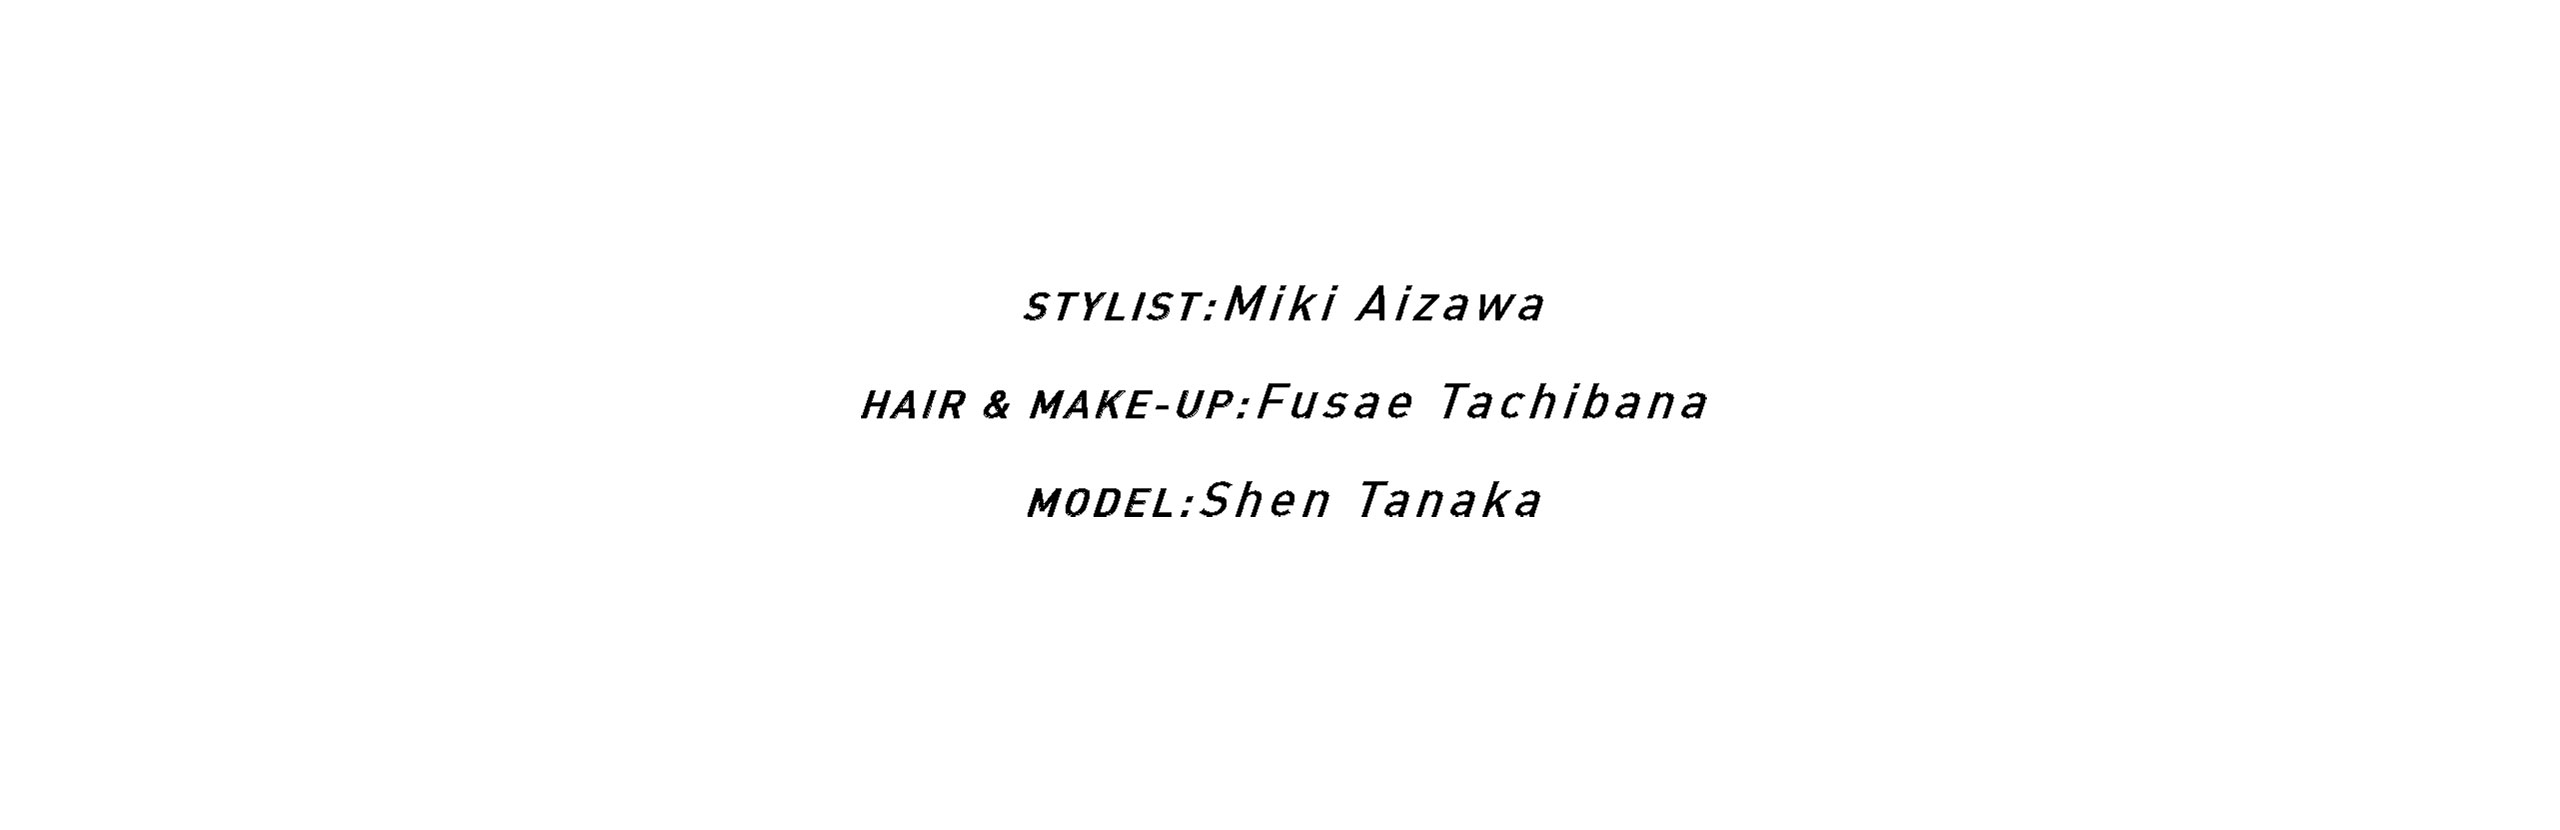 STYLIST:Miki Aizawa / HAIR & MAKE-UP:Fusae Tachibana / MODEL:Shen Tanaka